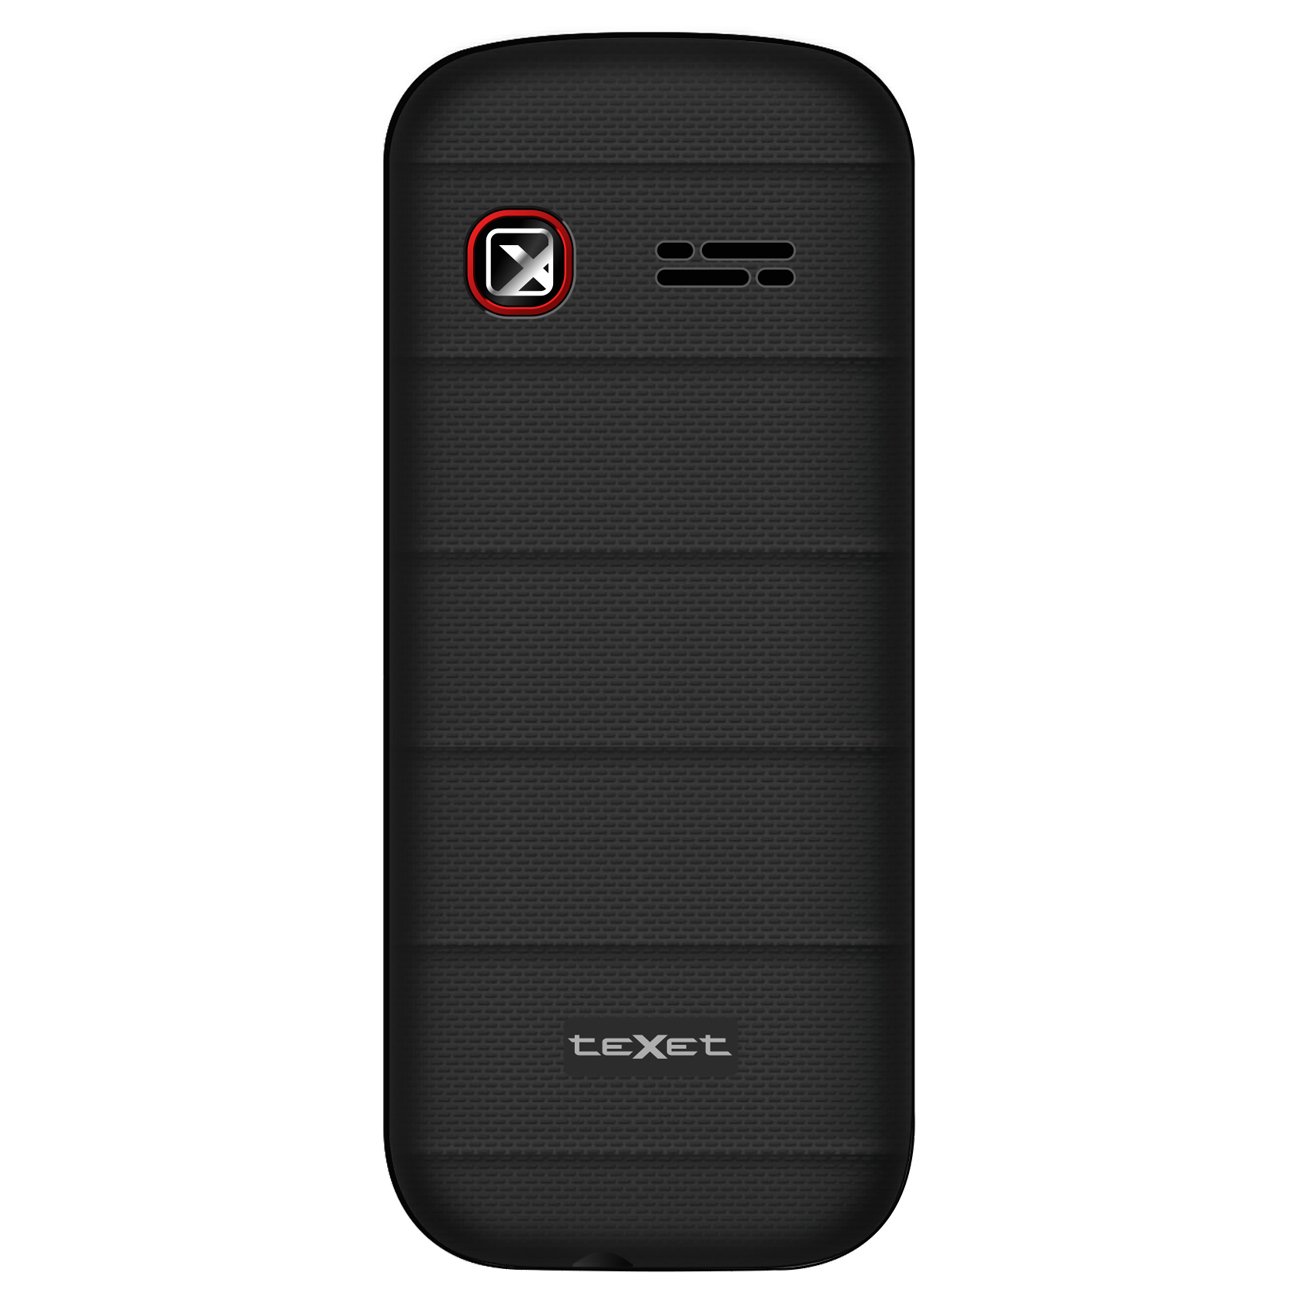 Телефон мобильный teXet TM-130, черно-красный